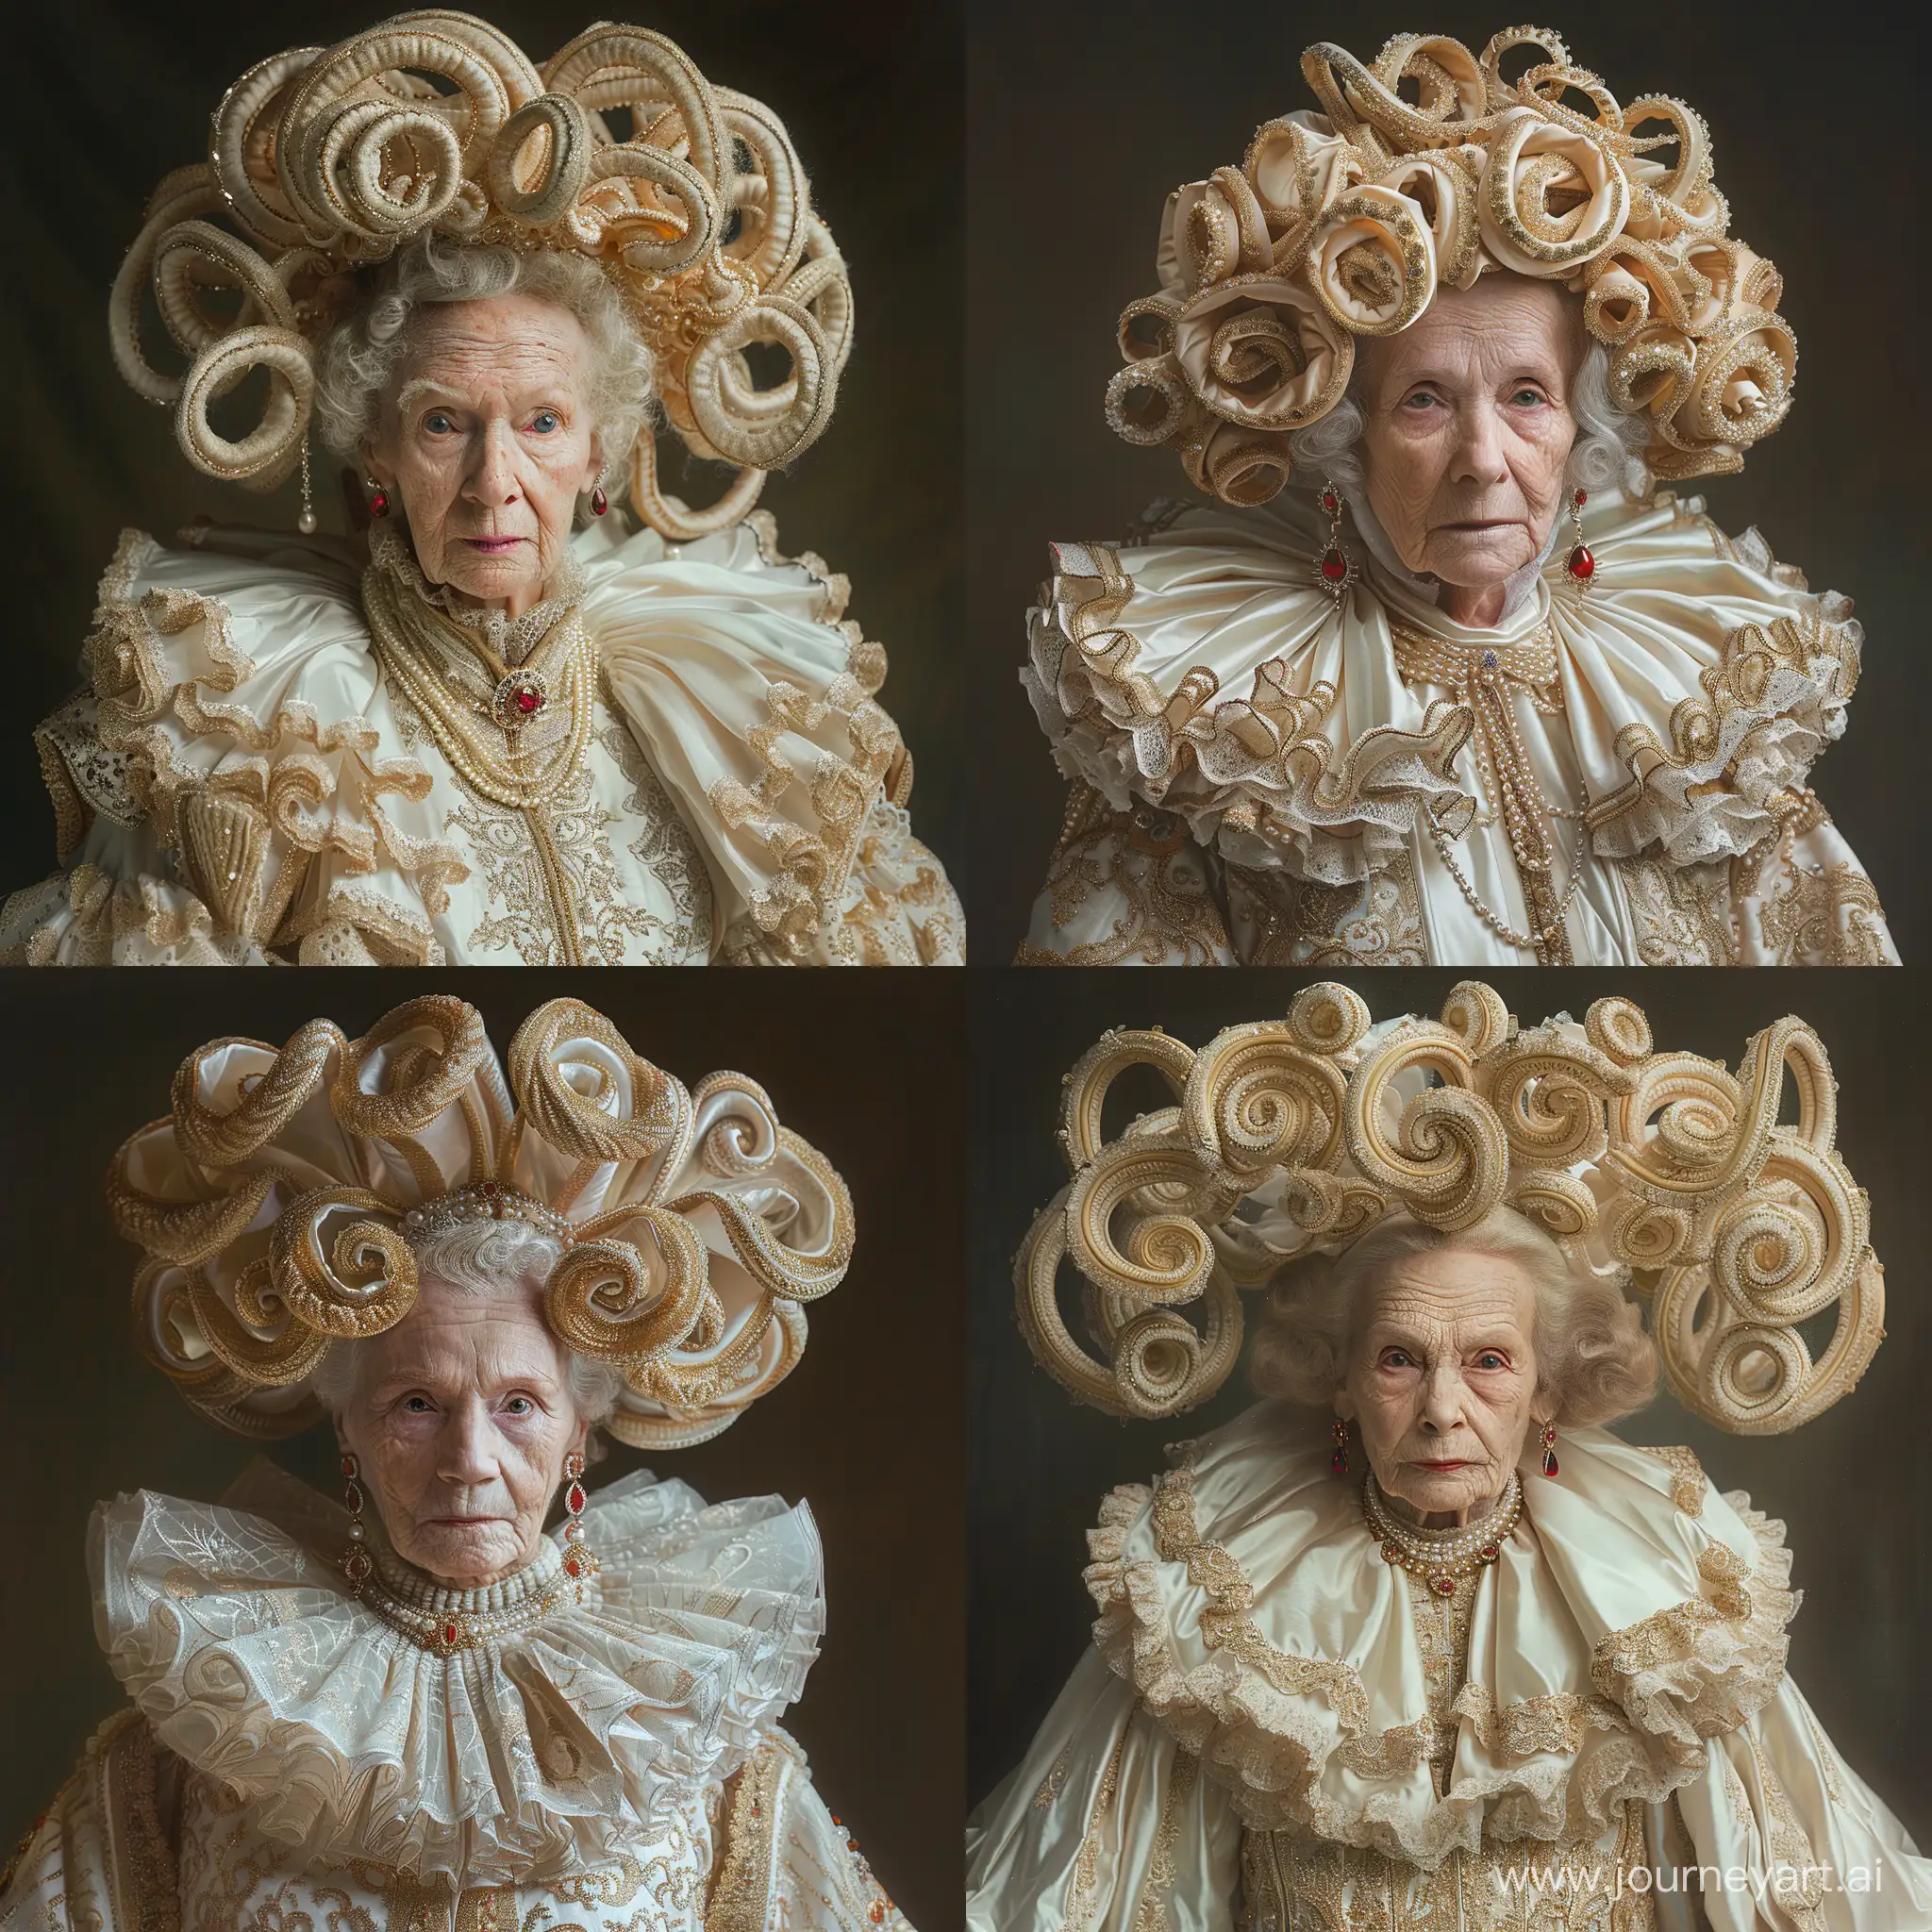 Ornate-Renaissance-Noblewoman-Portrait-Elaborate-Costume-and-Regal-Expression